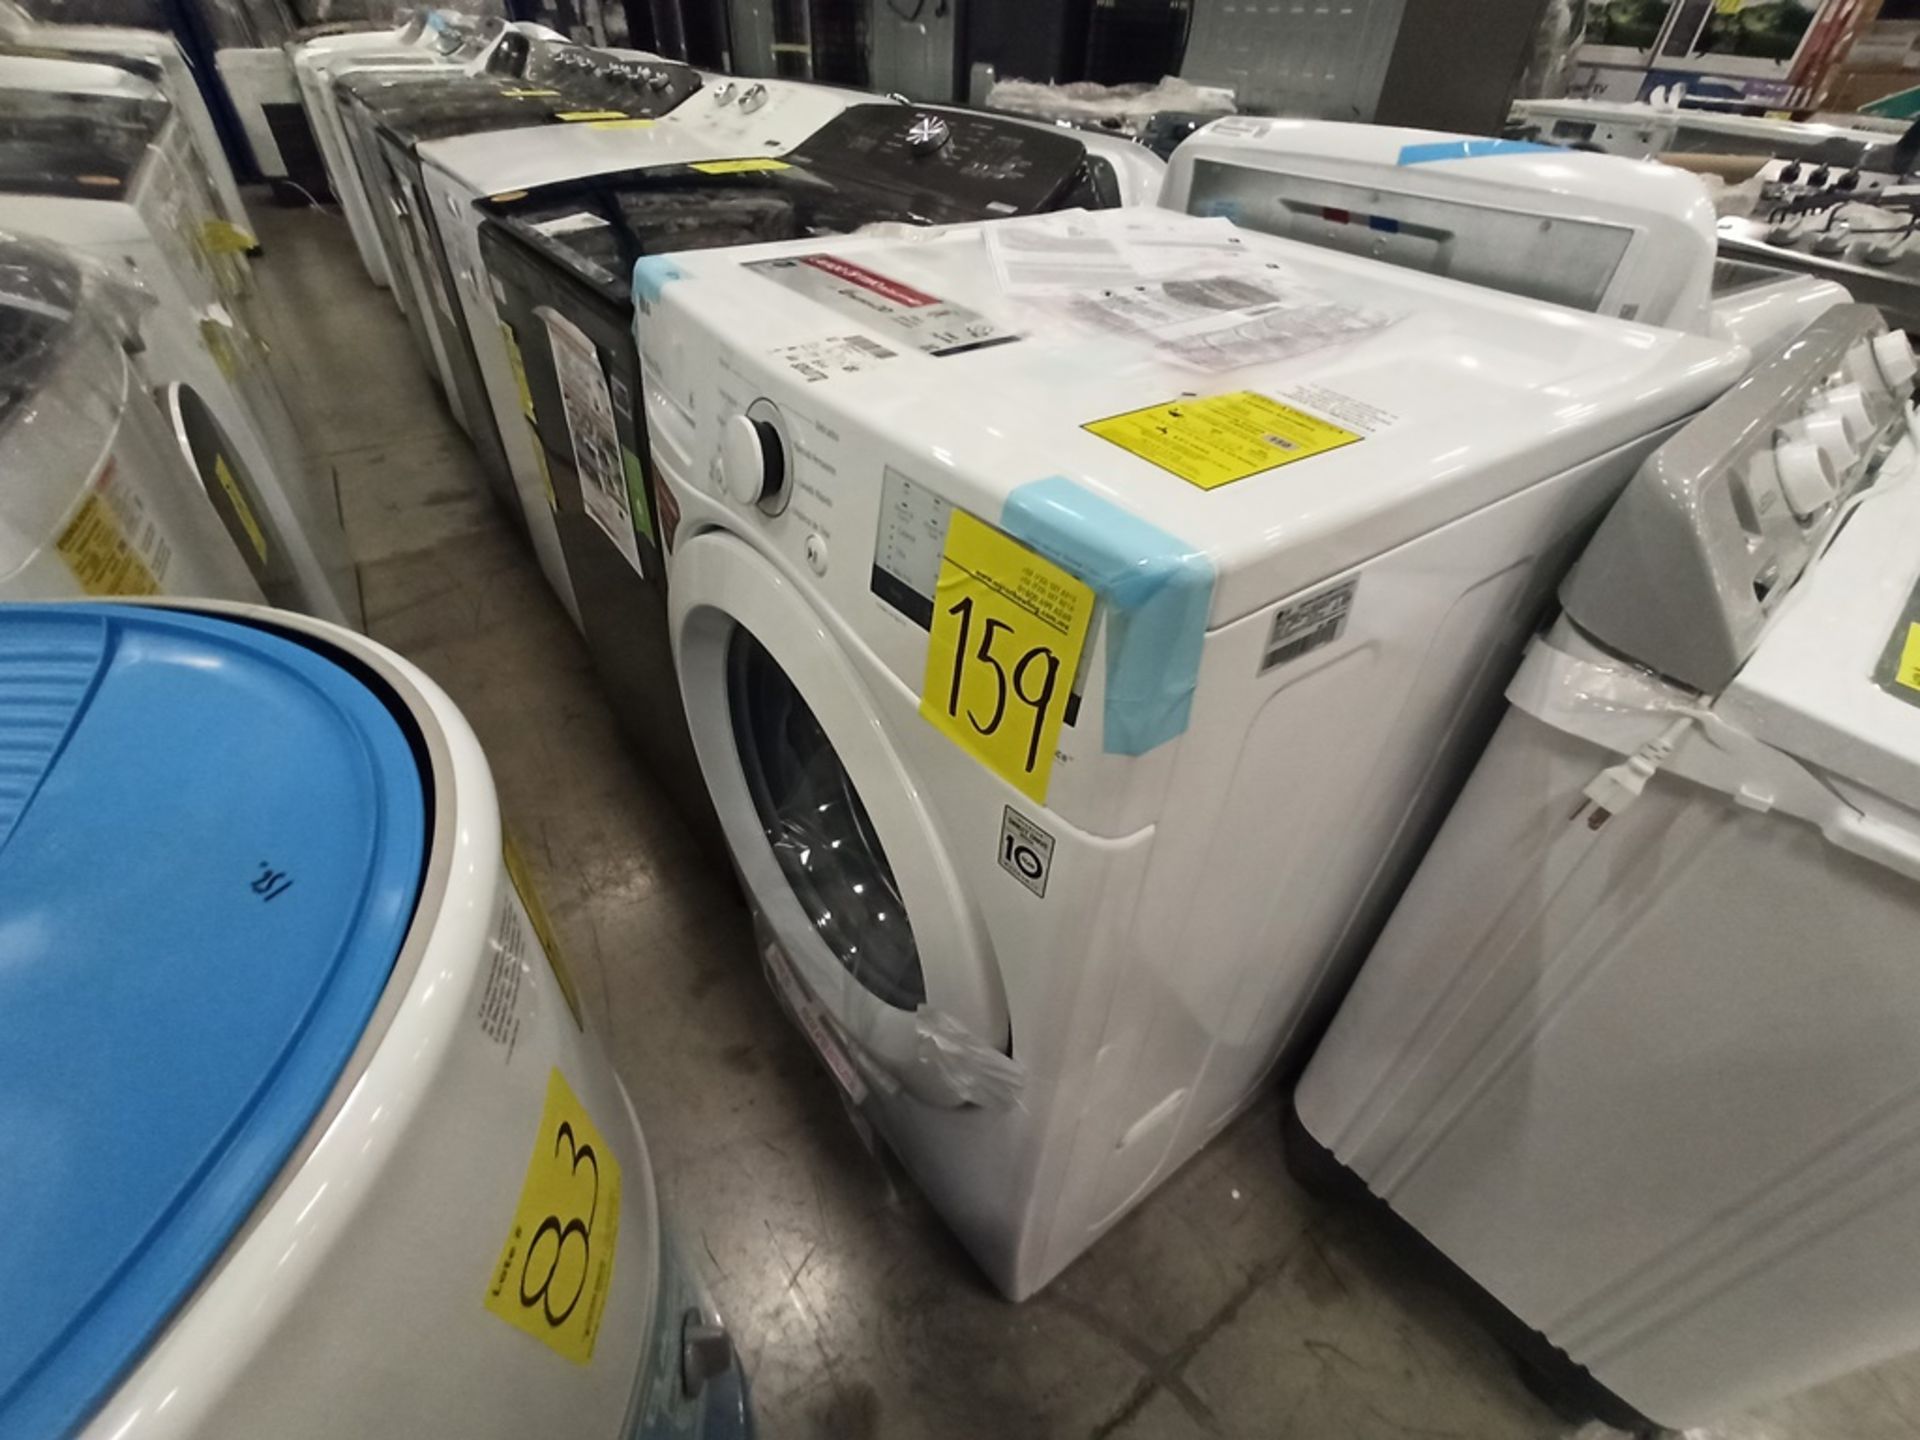 Lote de 2 lavadoras contiene: 1 lavadora de 24kg Marca WHIRPOOL, Modelo 8MWTWLA41WJG0, SerieHLB3888 - Image 14 of 18